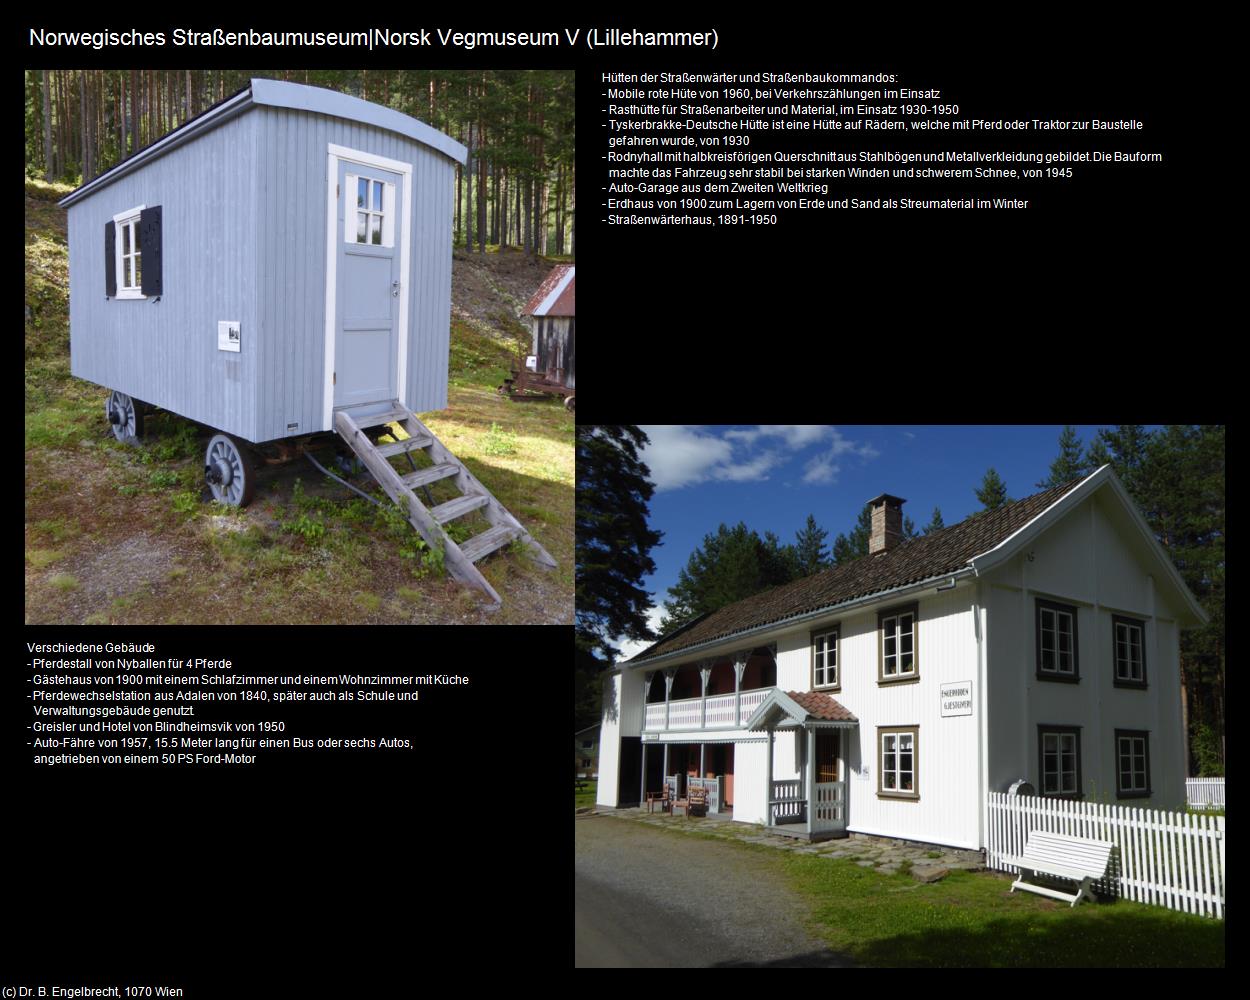 Norwegisches Straßenbaumuseum V (Hunderfossen) (Lillehammer) in Kulturatlas-REISE nach NORWEGEN